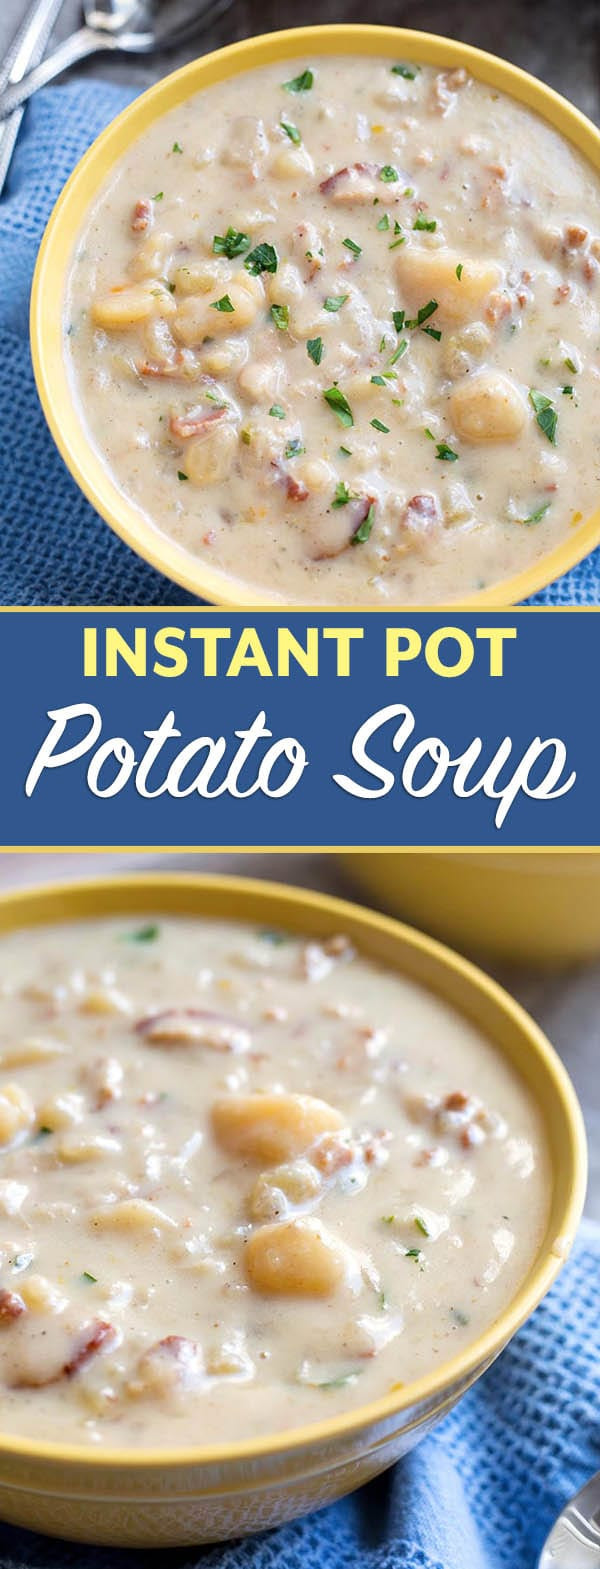 Potato Soup In Instant Pot
 Instant Pot Simple Potato Soup